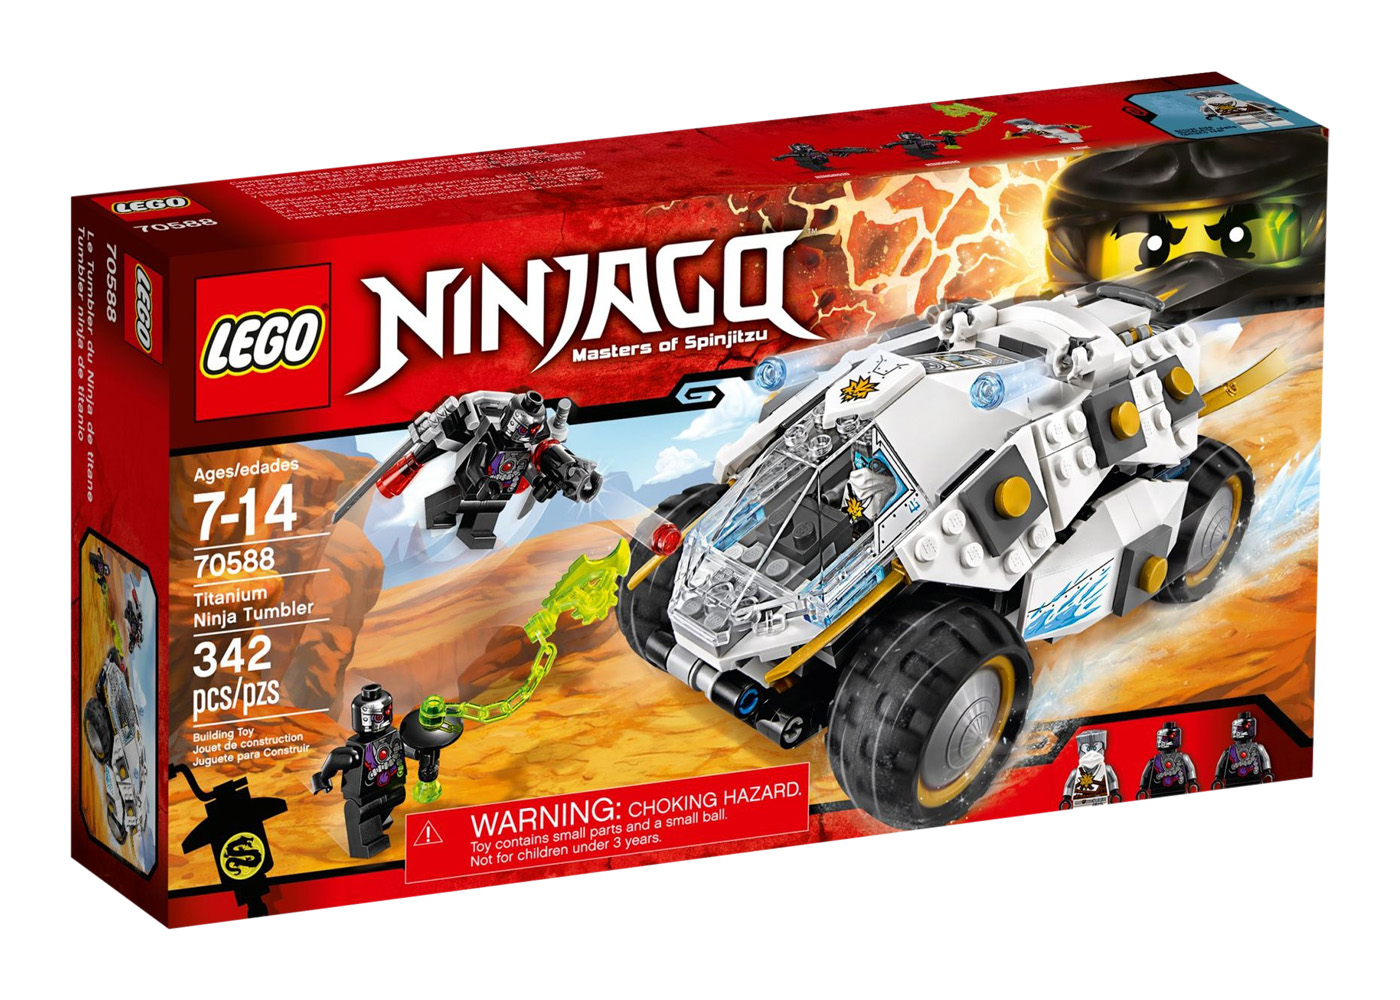 LEGO Ninjago Titanium Ninja Tumbler Set 70588 - US